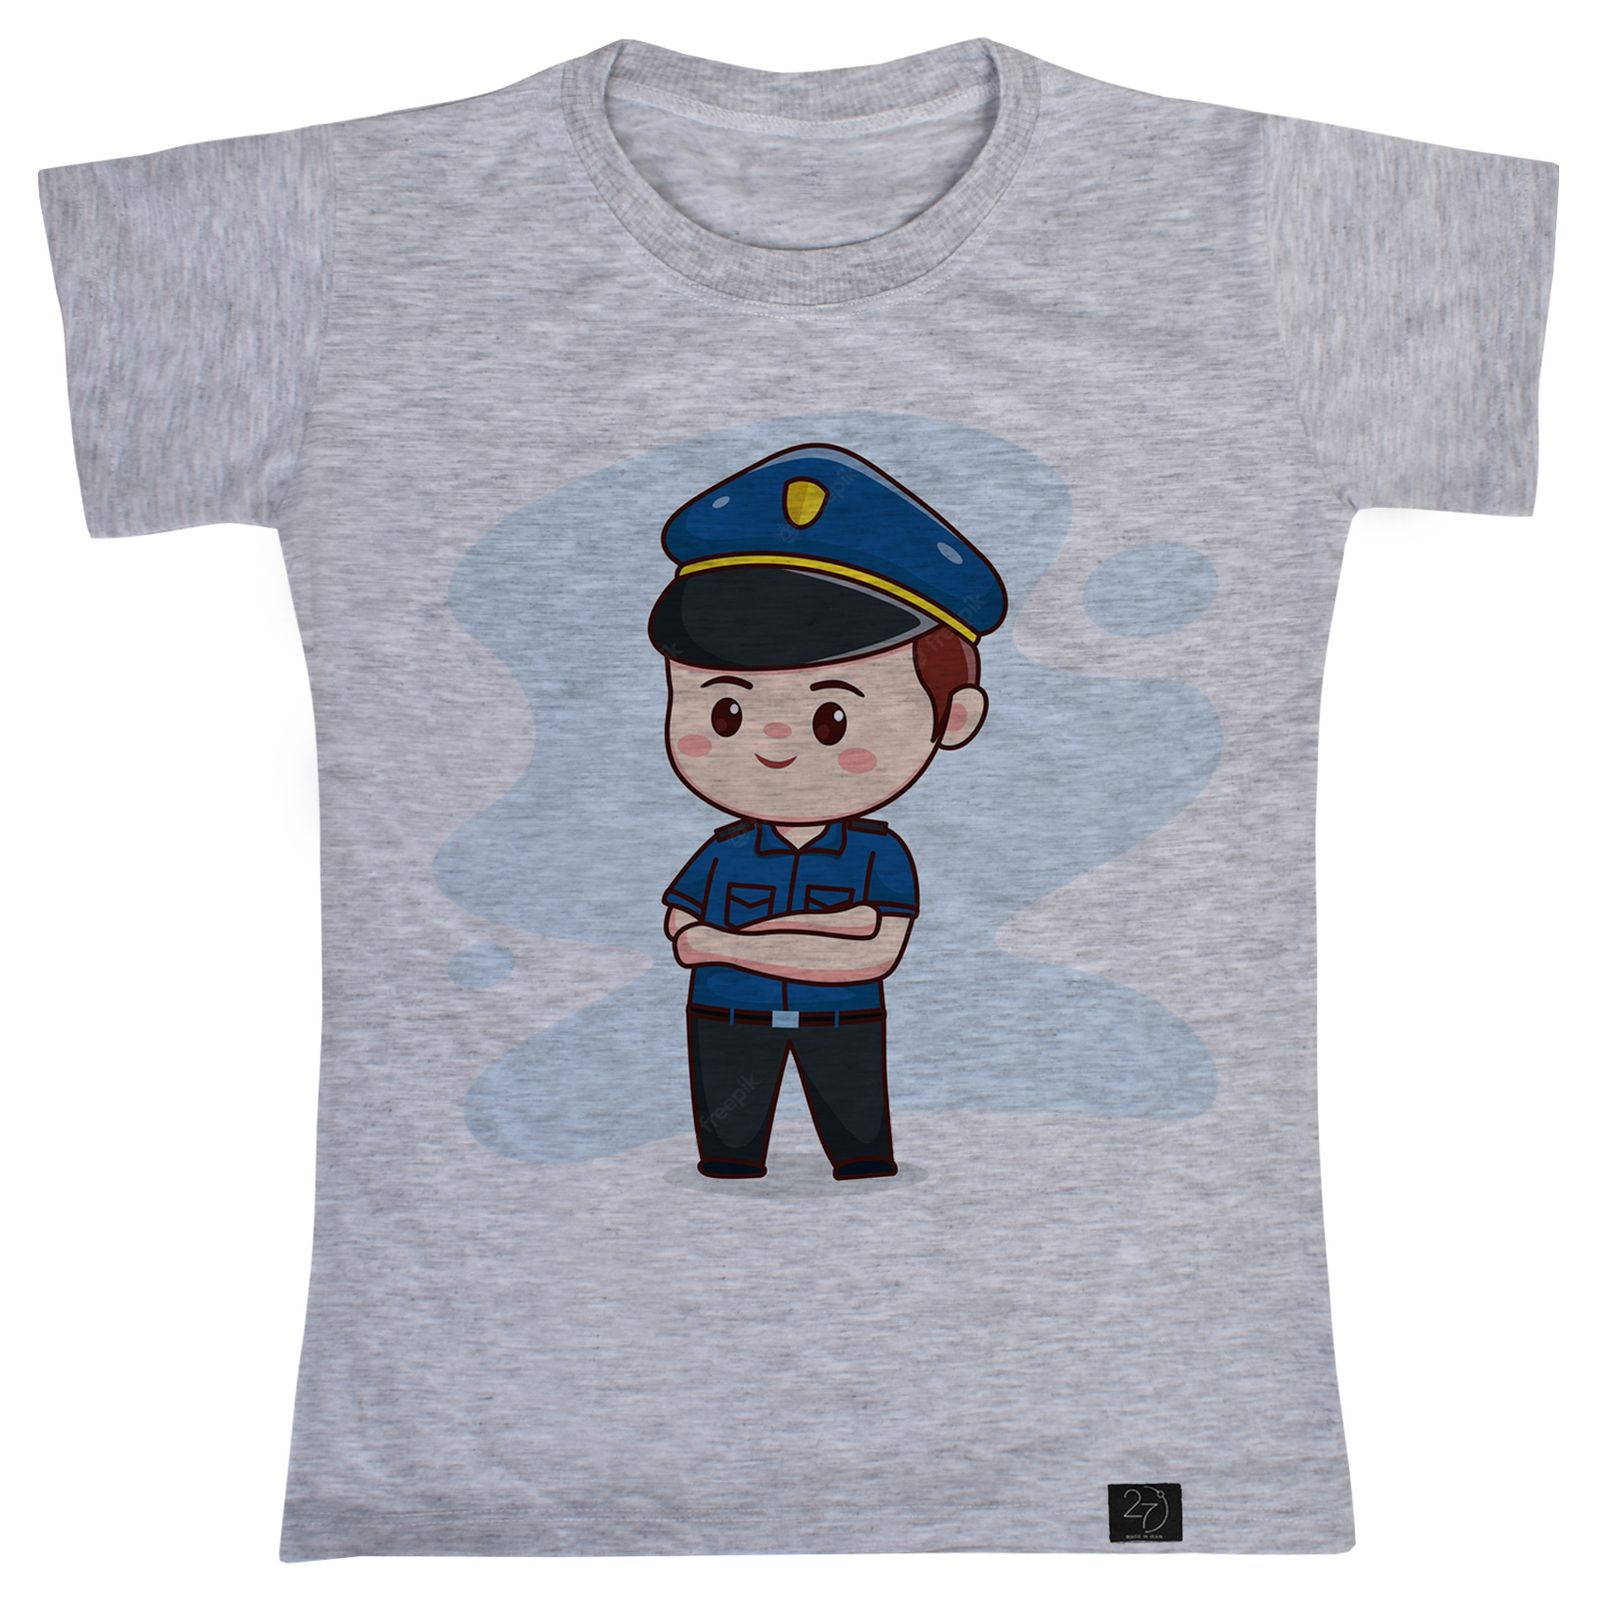 تی شرت آستین کوتاه پسرانه 27 مدل پلیس کد KV115